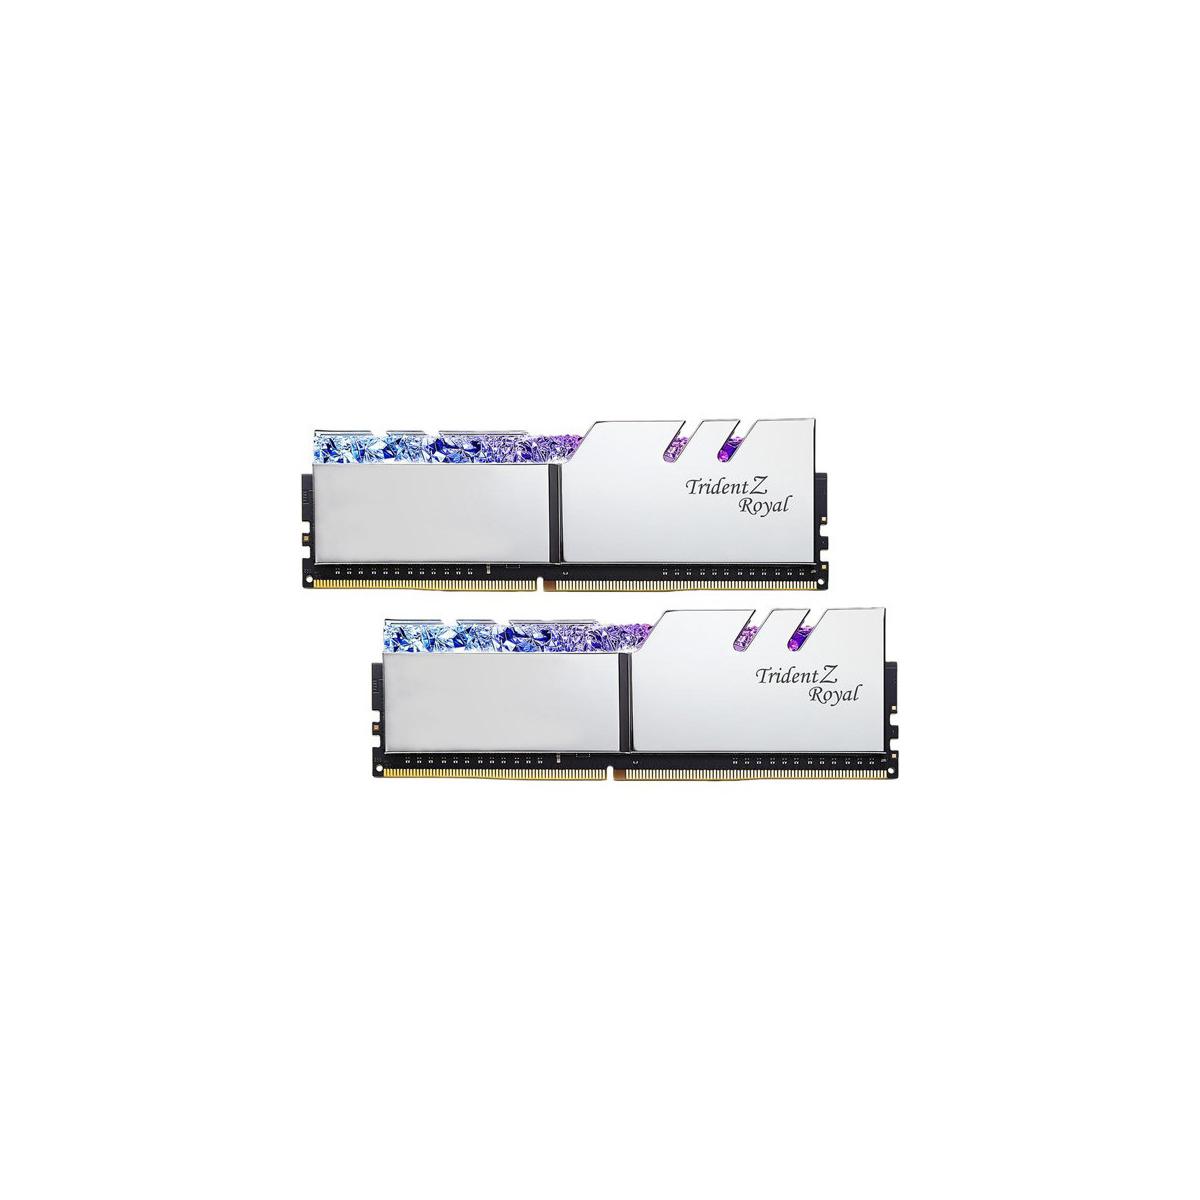 MEMORIA DIMM DDR4 G.SKILL (F4-3600C18D-32GTRS) 32GB (2X16GB) 3600 MHZ, TRIDENT ROYAL SILVER - G.SKILL